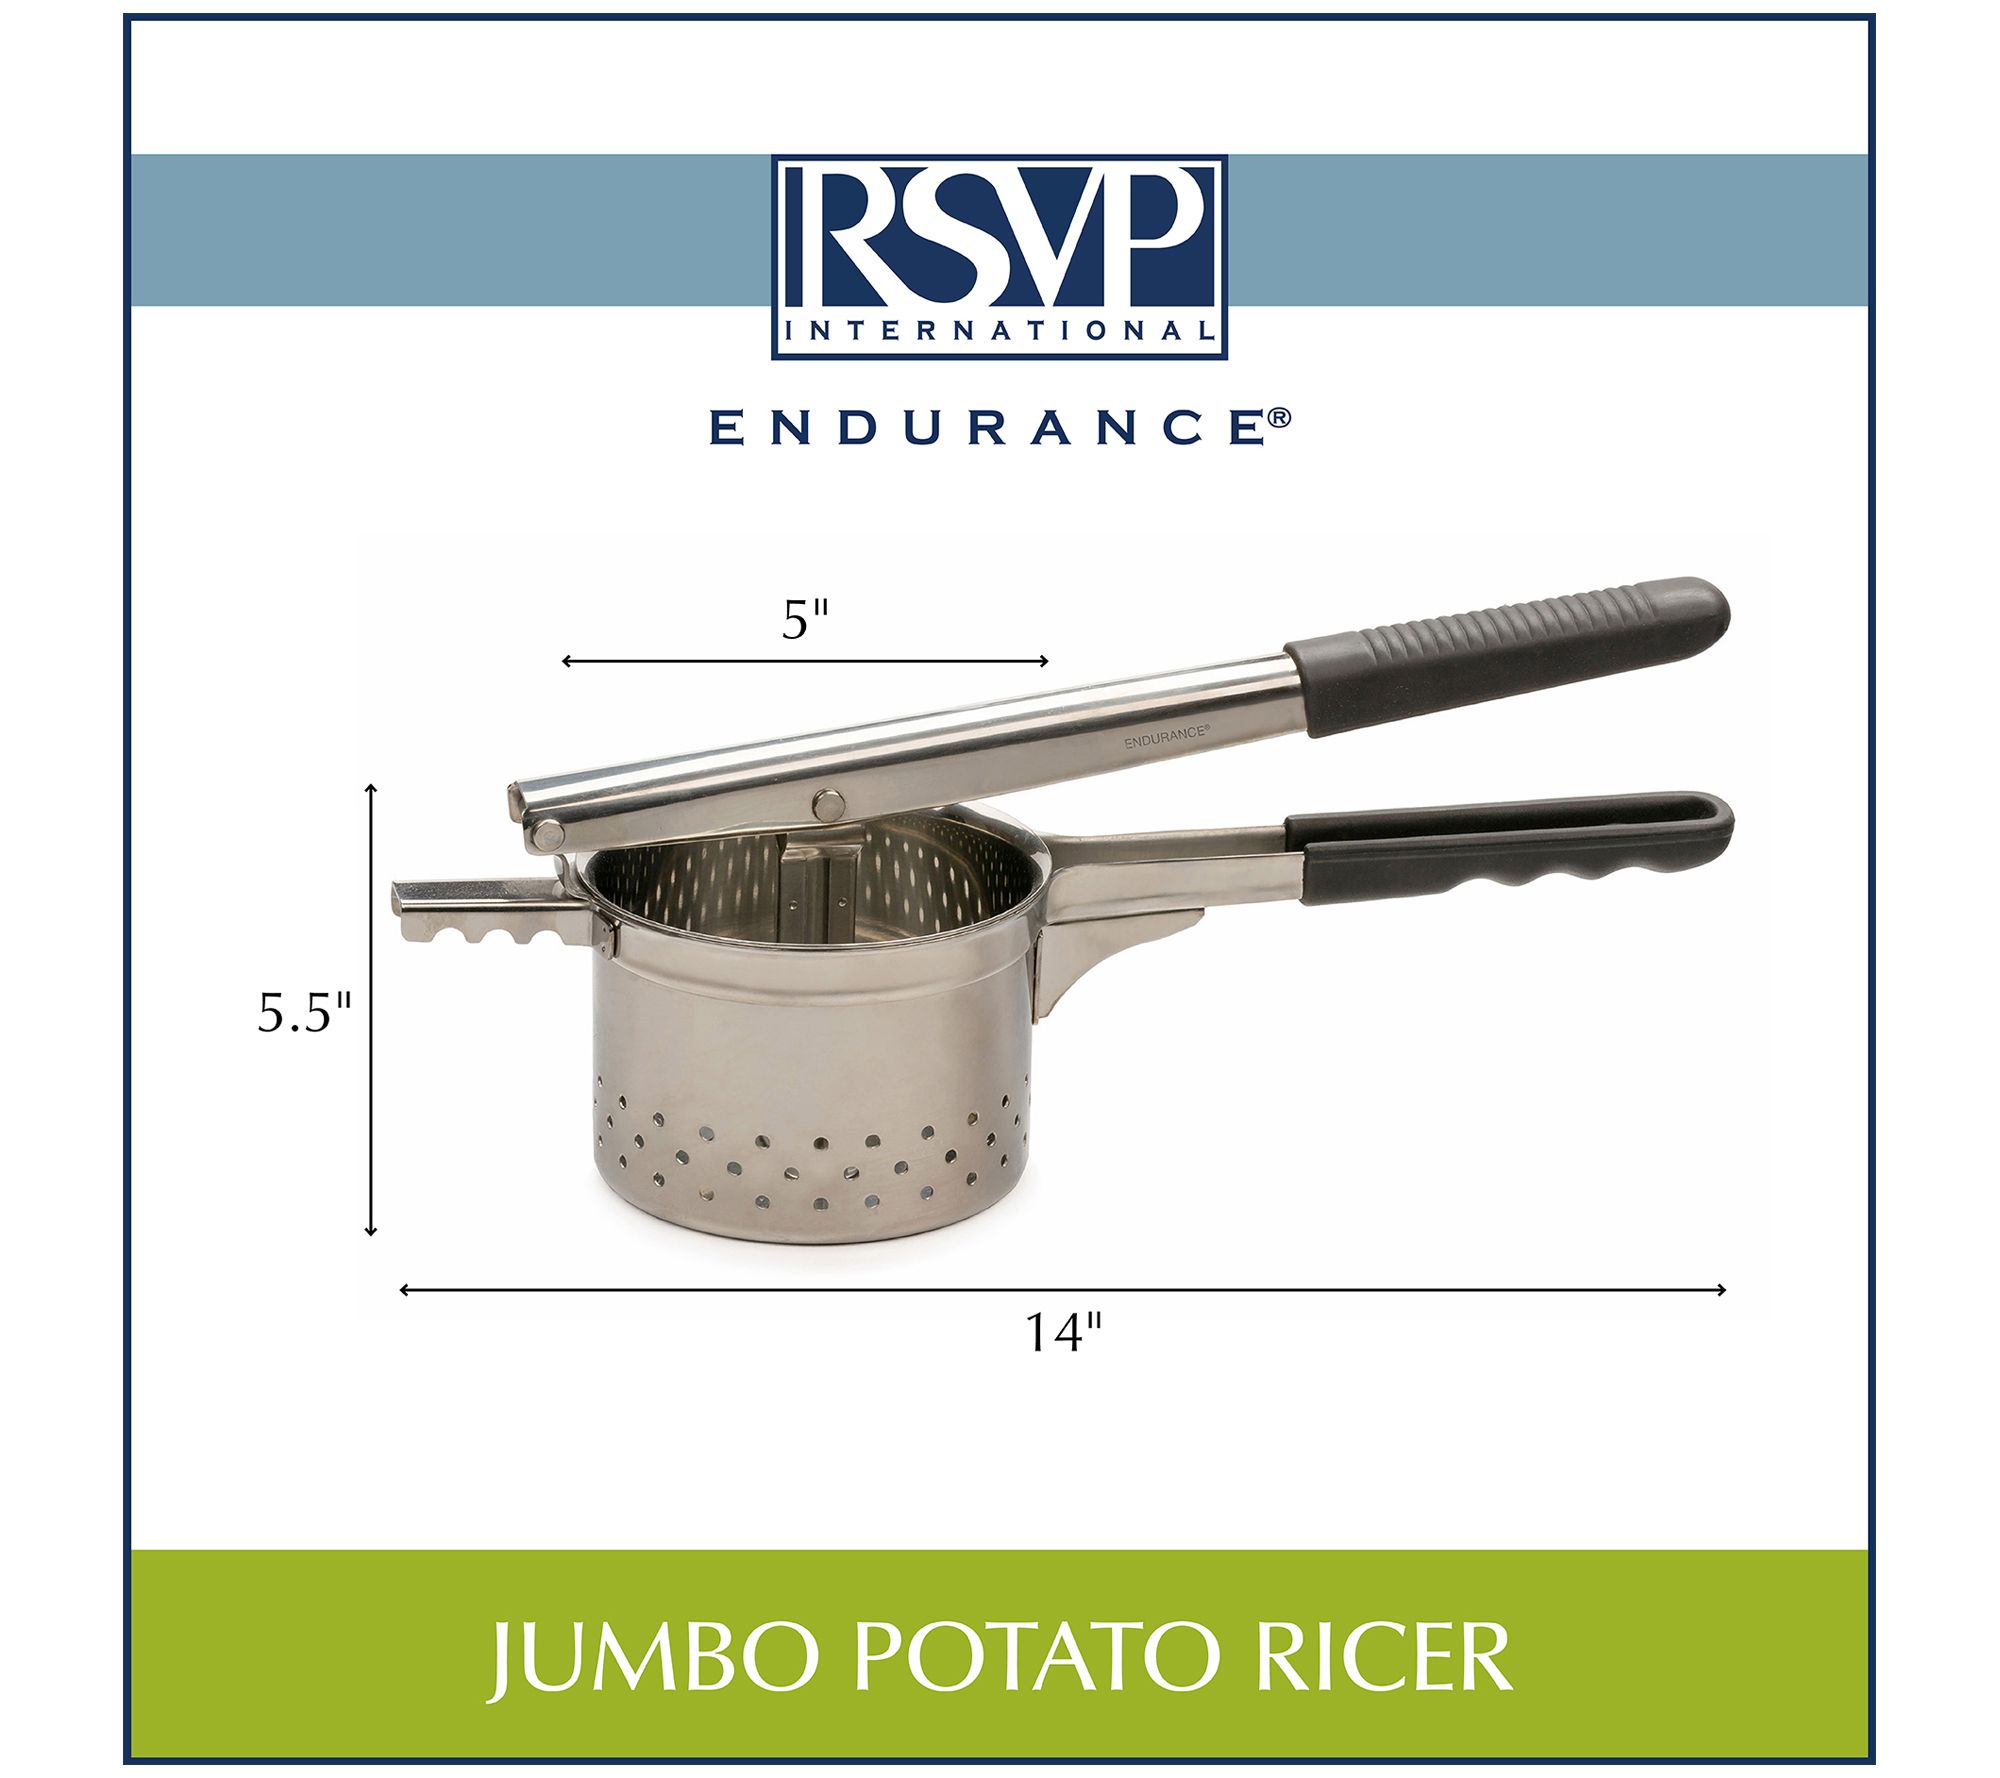 RSVP International Jumbo Potato Ricer, Stainless Steel